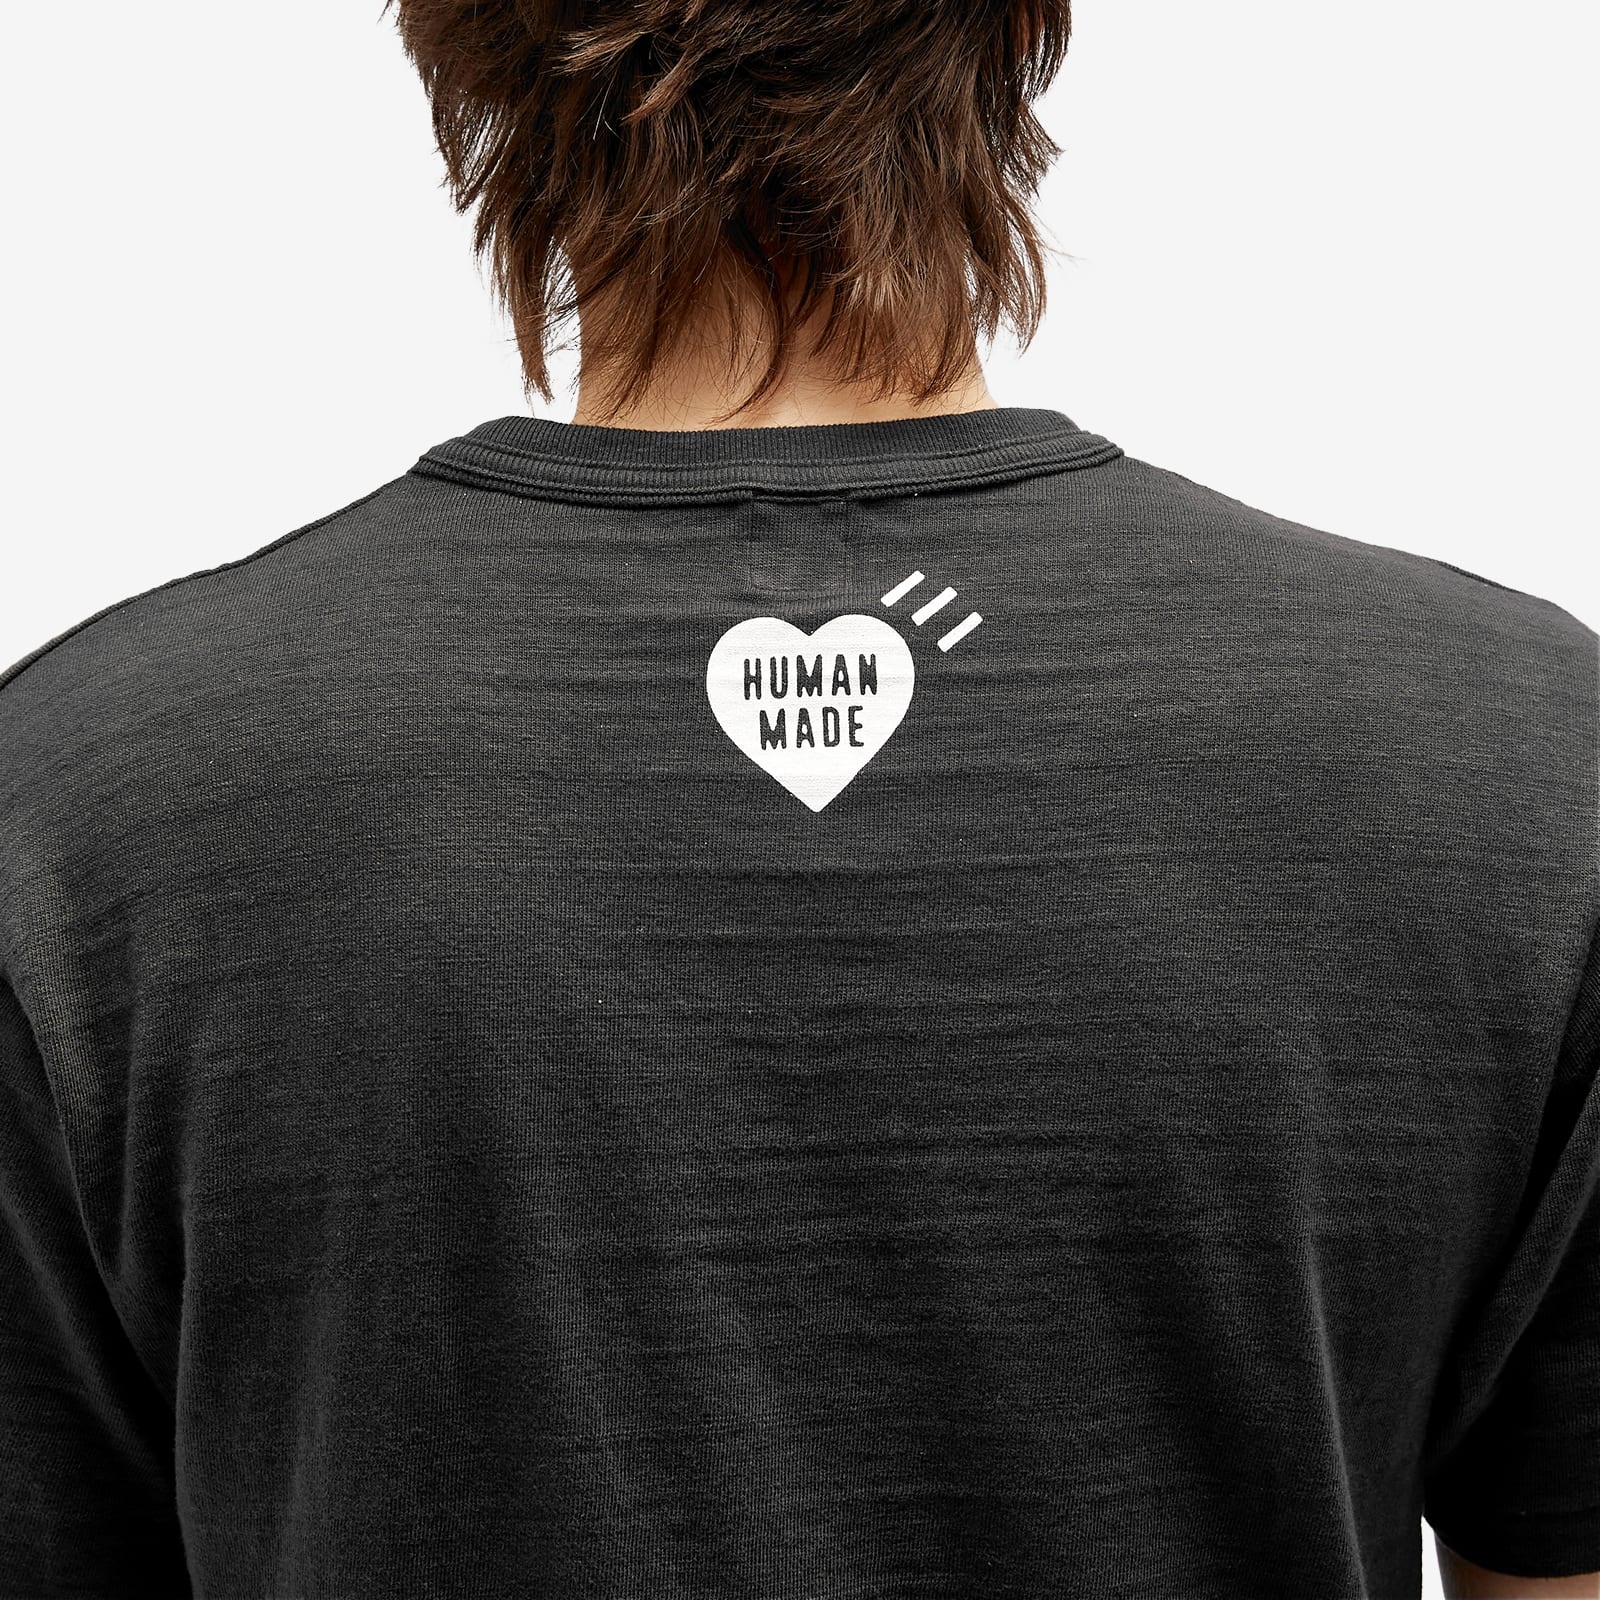 Human Made Drawn Hearts T-Shirt - 5